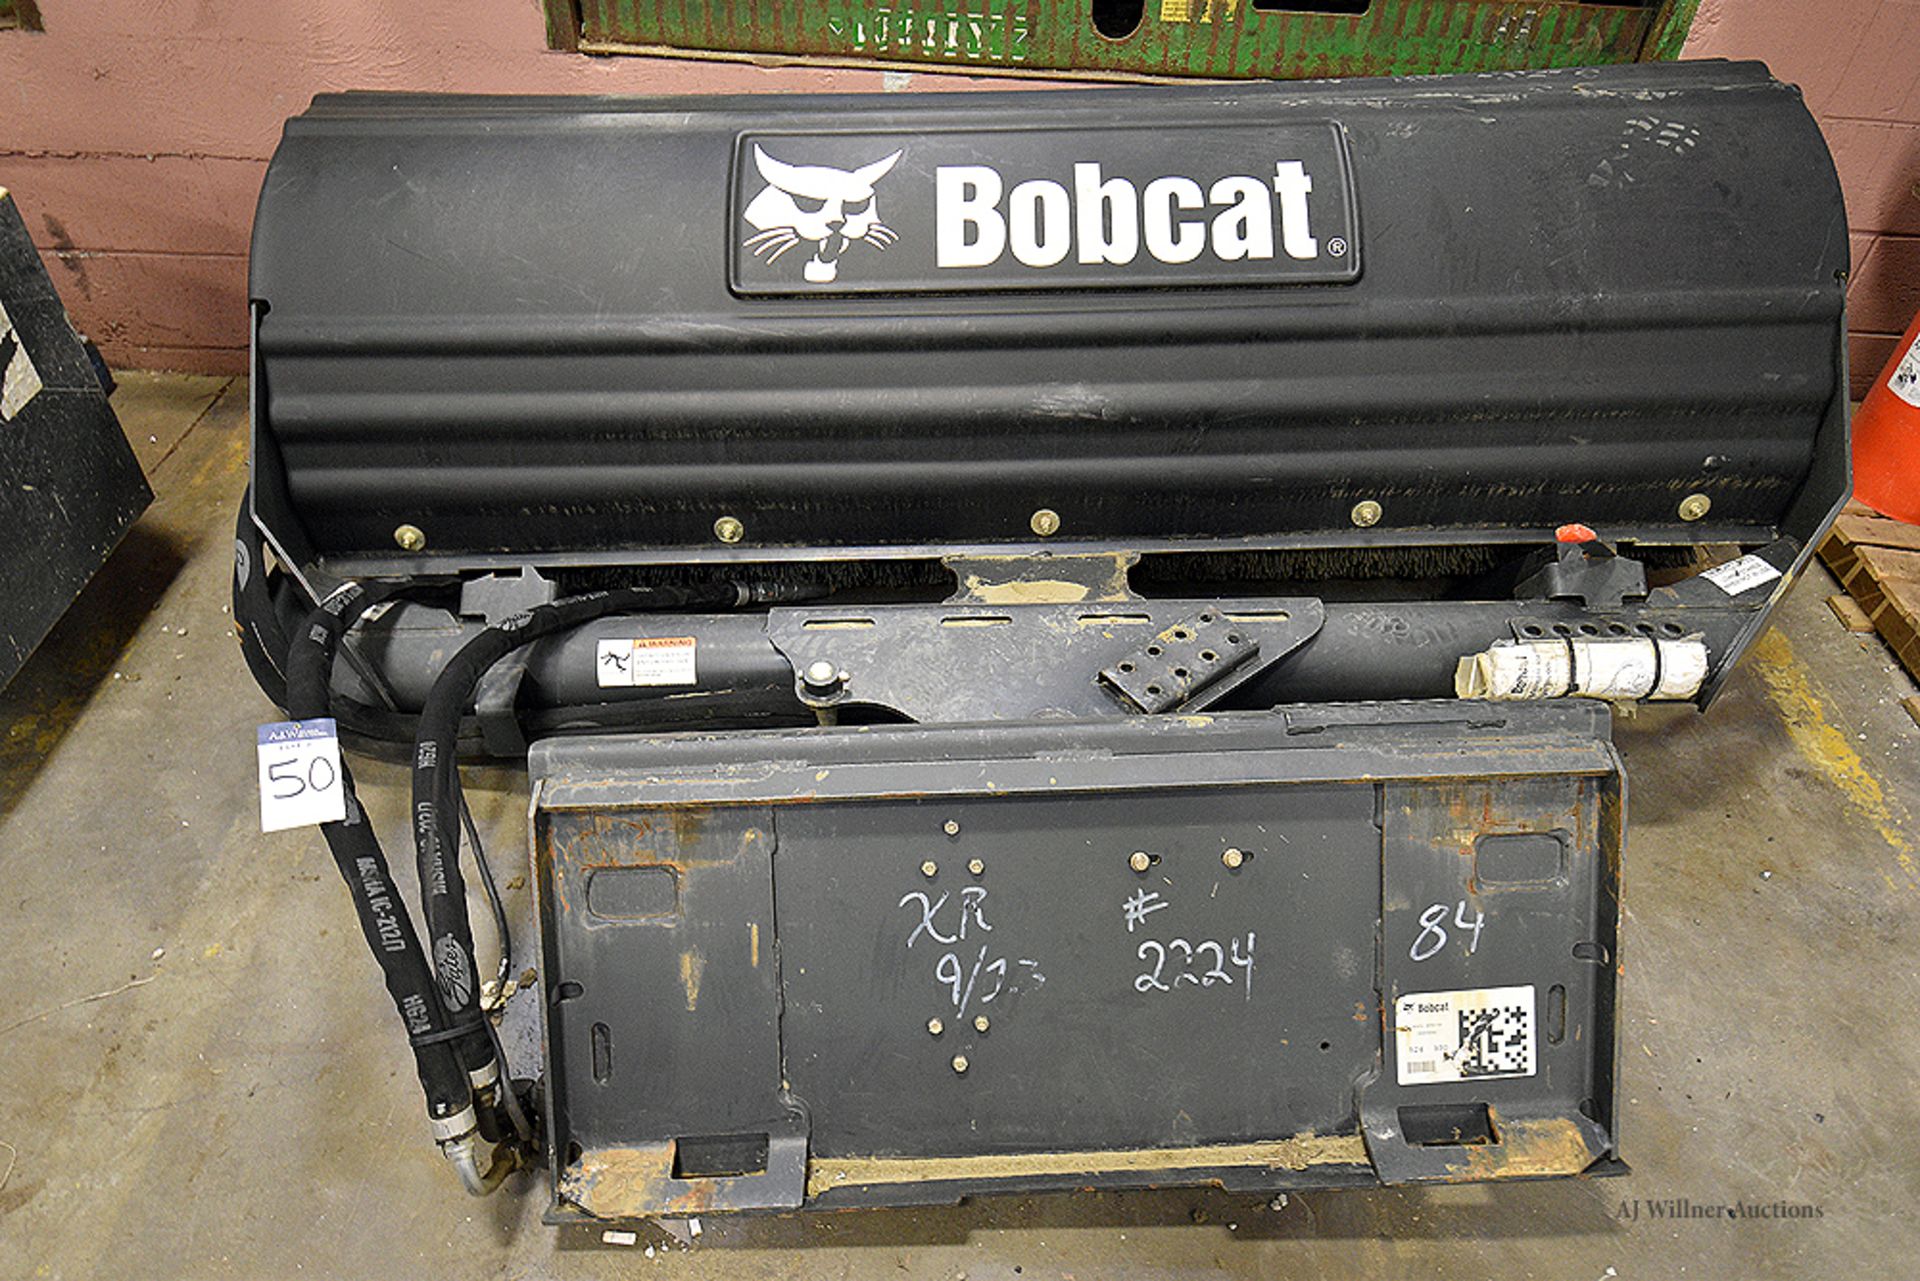 Bobcat Angle Broom 84"